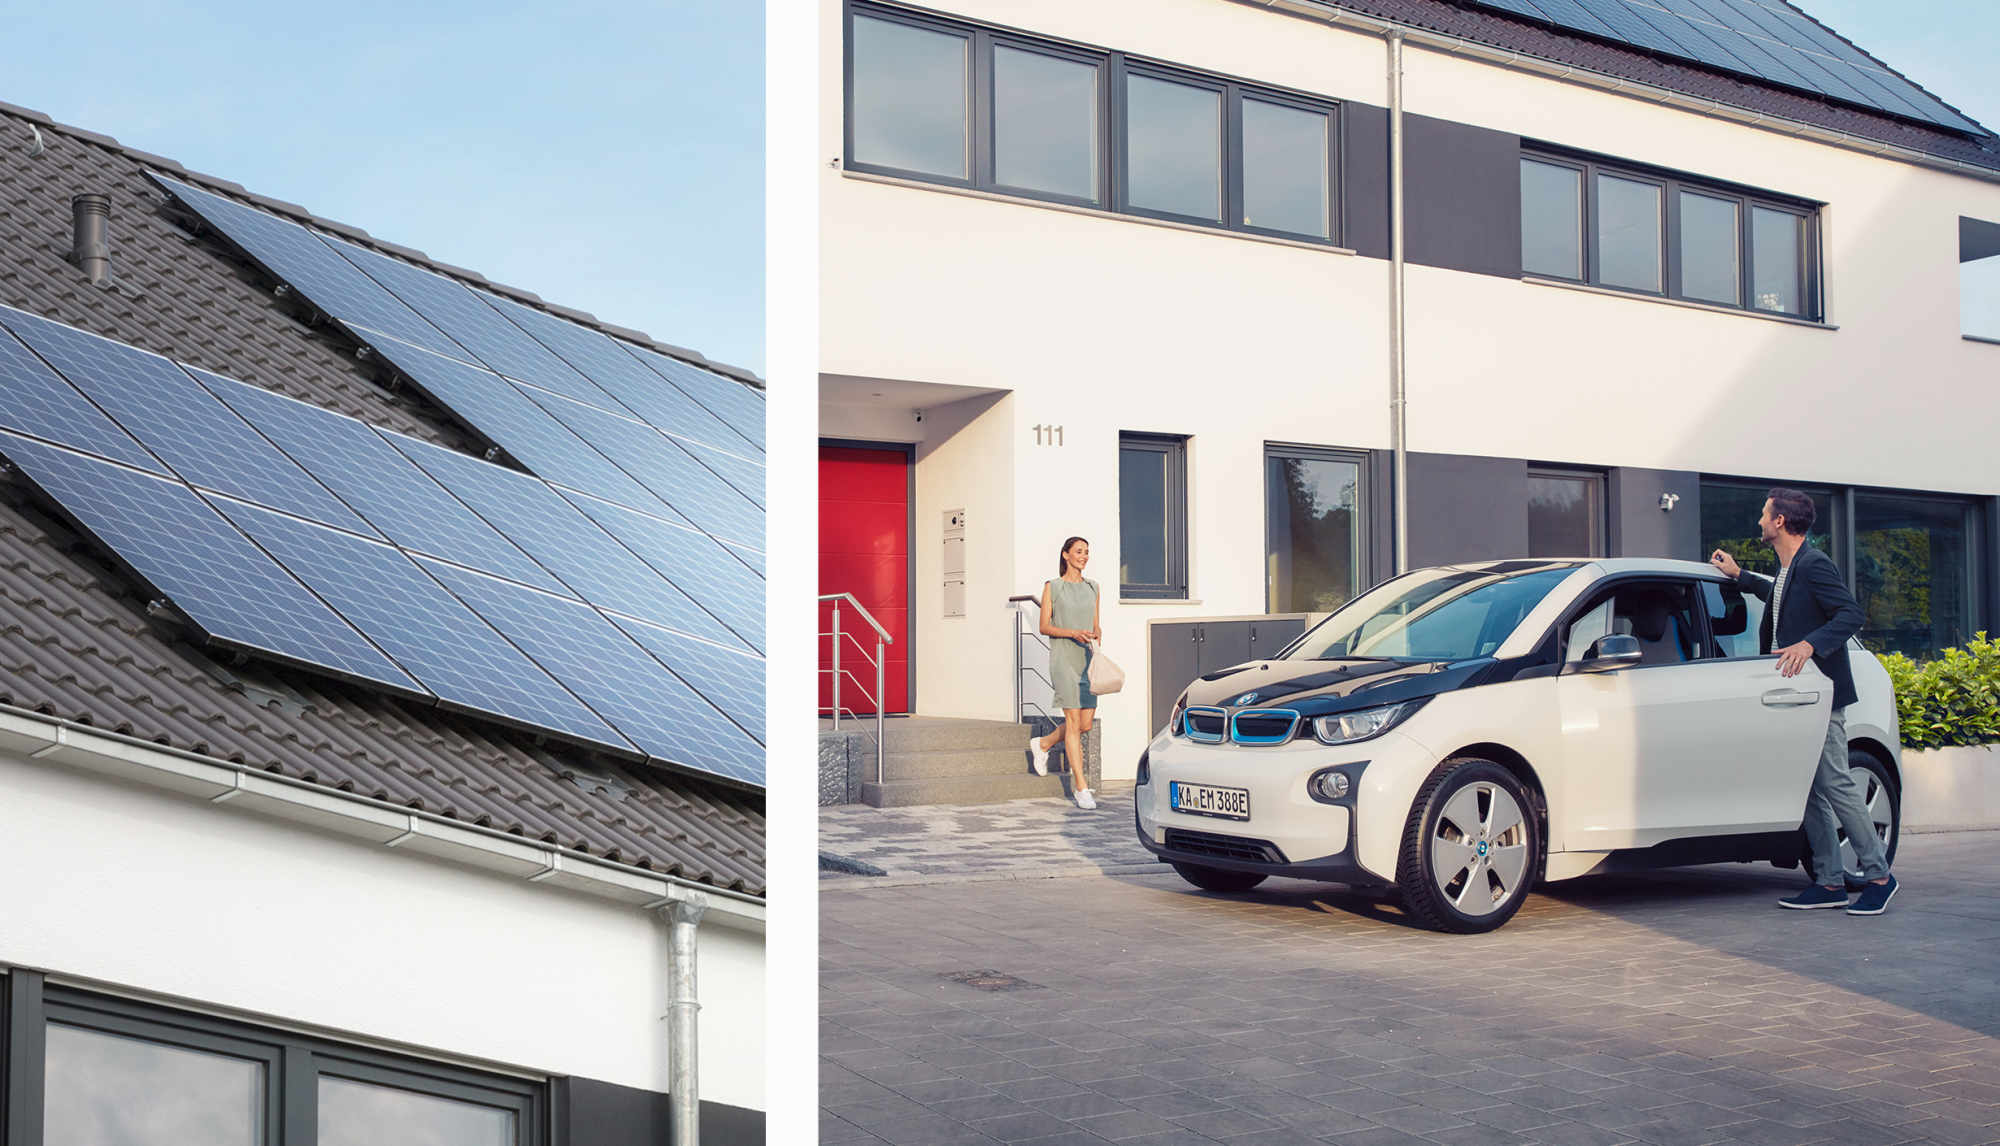 Links EnBW solar+ Solaranlage auf Daniels Dach, rechts Daniel und seine Frau steigen in ihr E-Auto ein